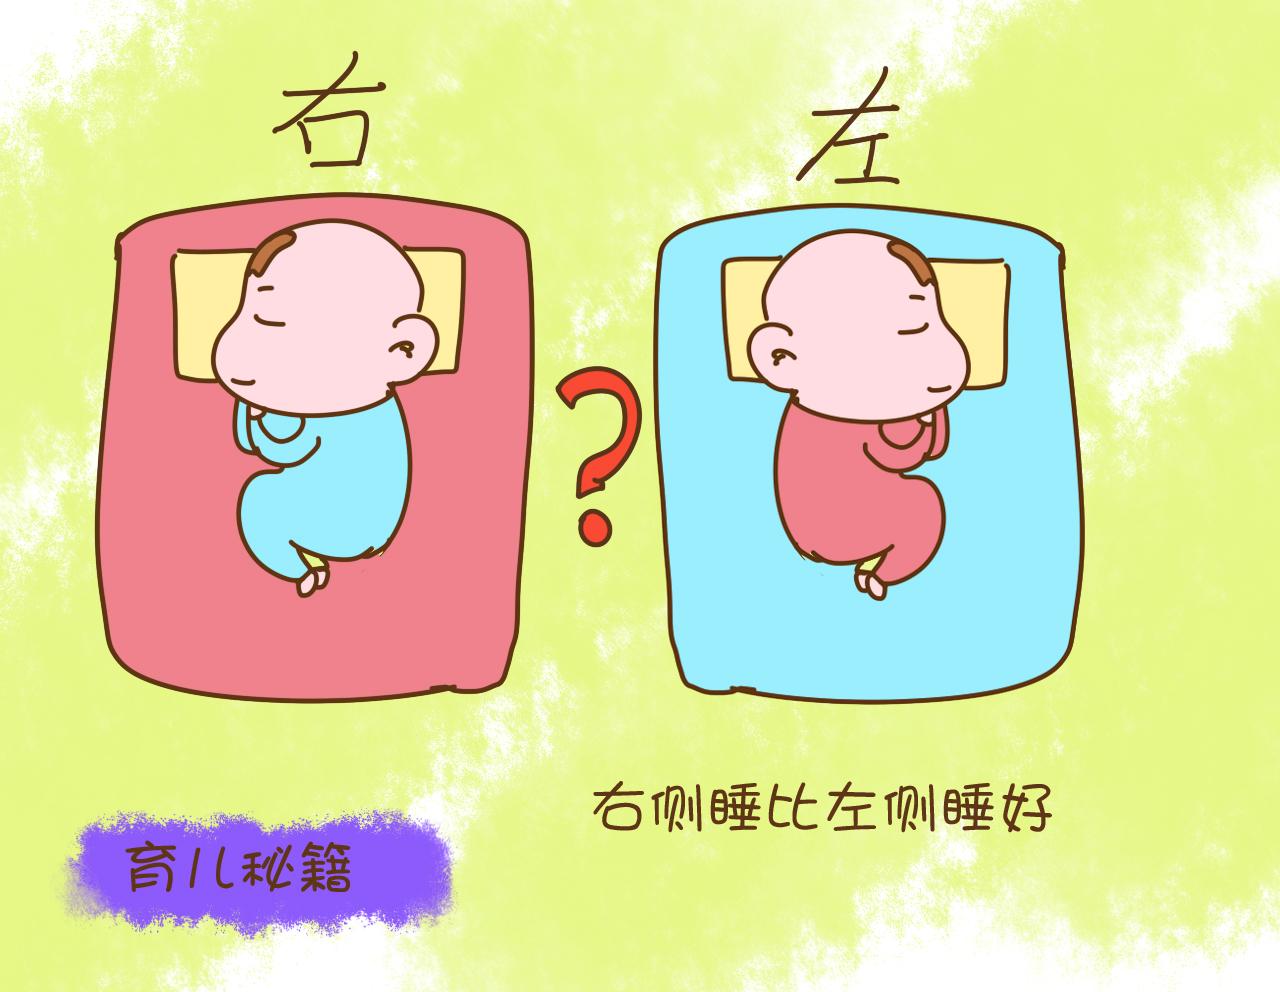 婴儿侧睡正确图解侧身图片